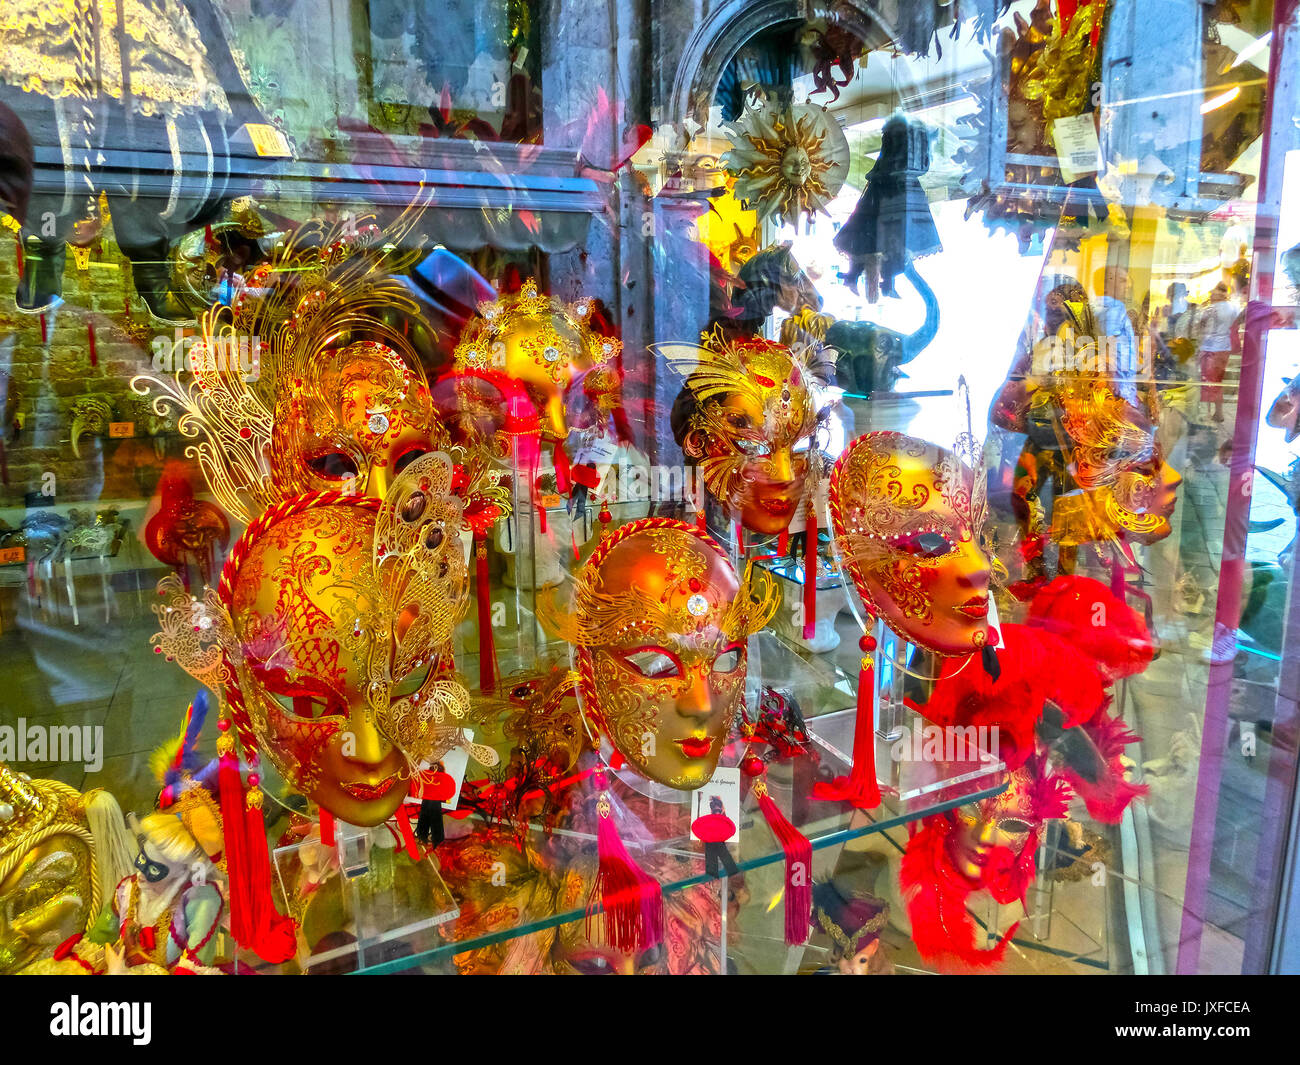 Venise, Italie - juin13, 2015 : les masques de carnaval vénitien, magasin de souvenirs dans une rue Banque D'Images